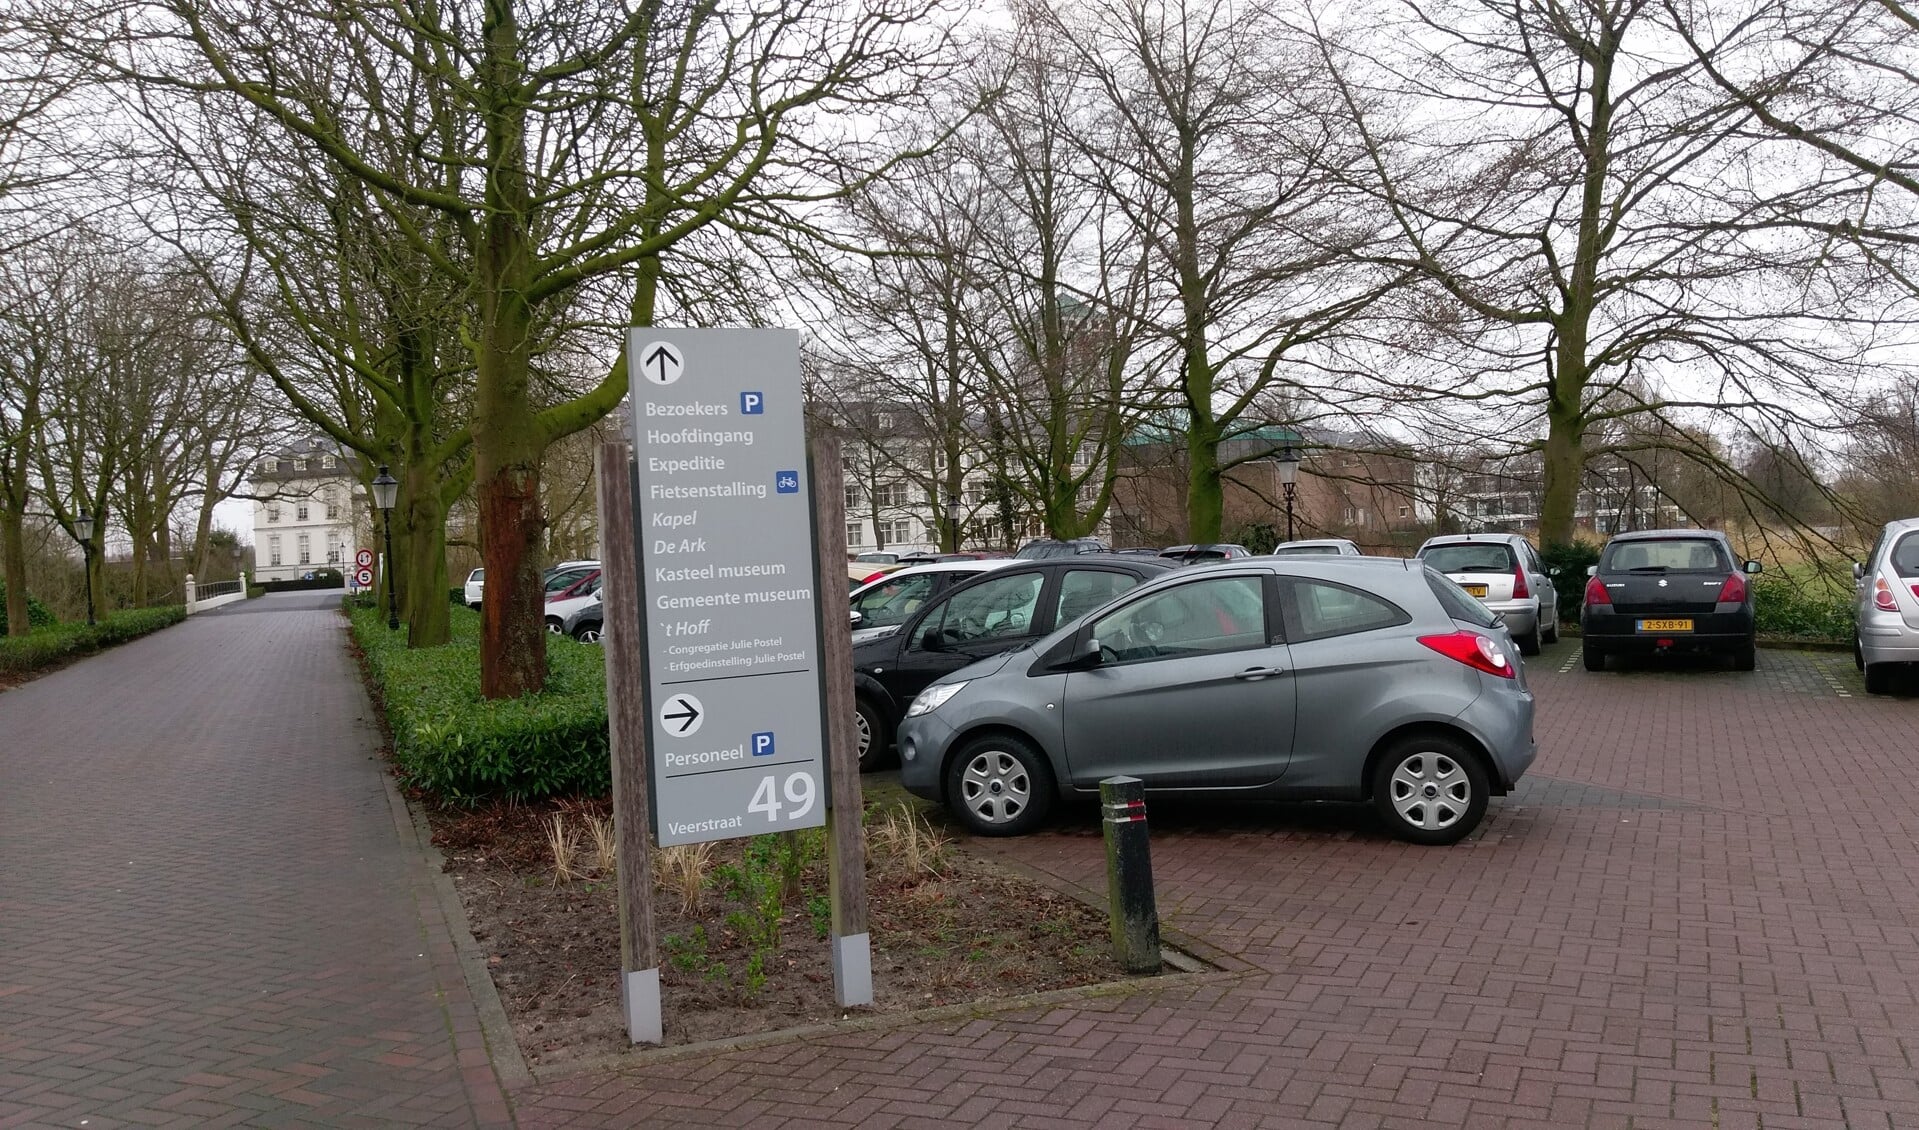 De gemeente Boxmeer wil meewerken aan een vergunning voor de tijdelijke opvang De Ark bij Julie Postel in Boxmeer.